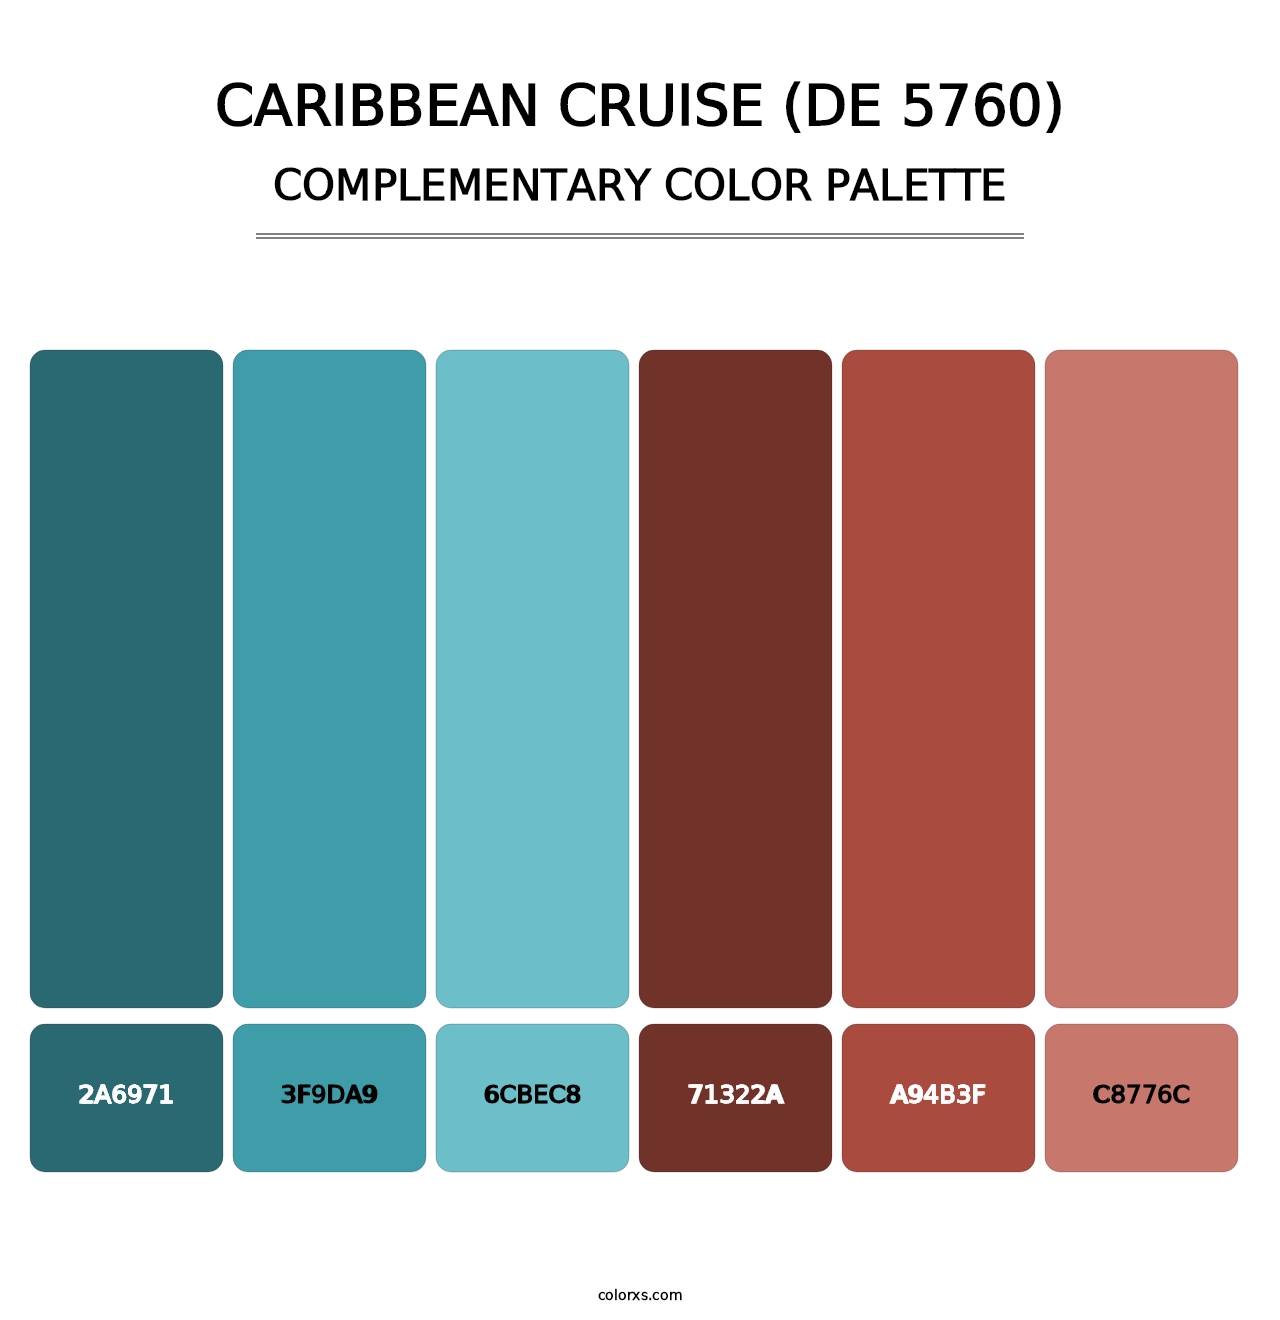 Caribbean Cruise (DE 5760) - Complementary Color Palette